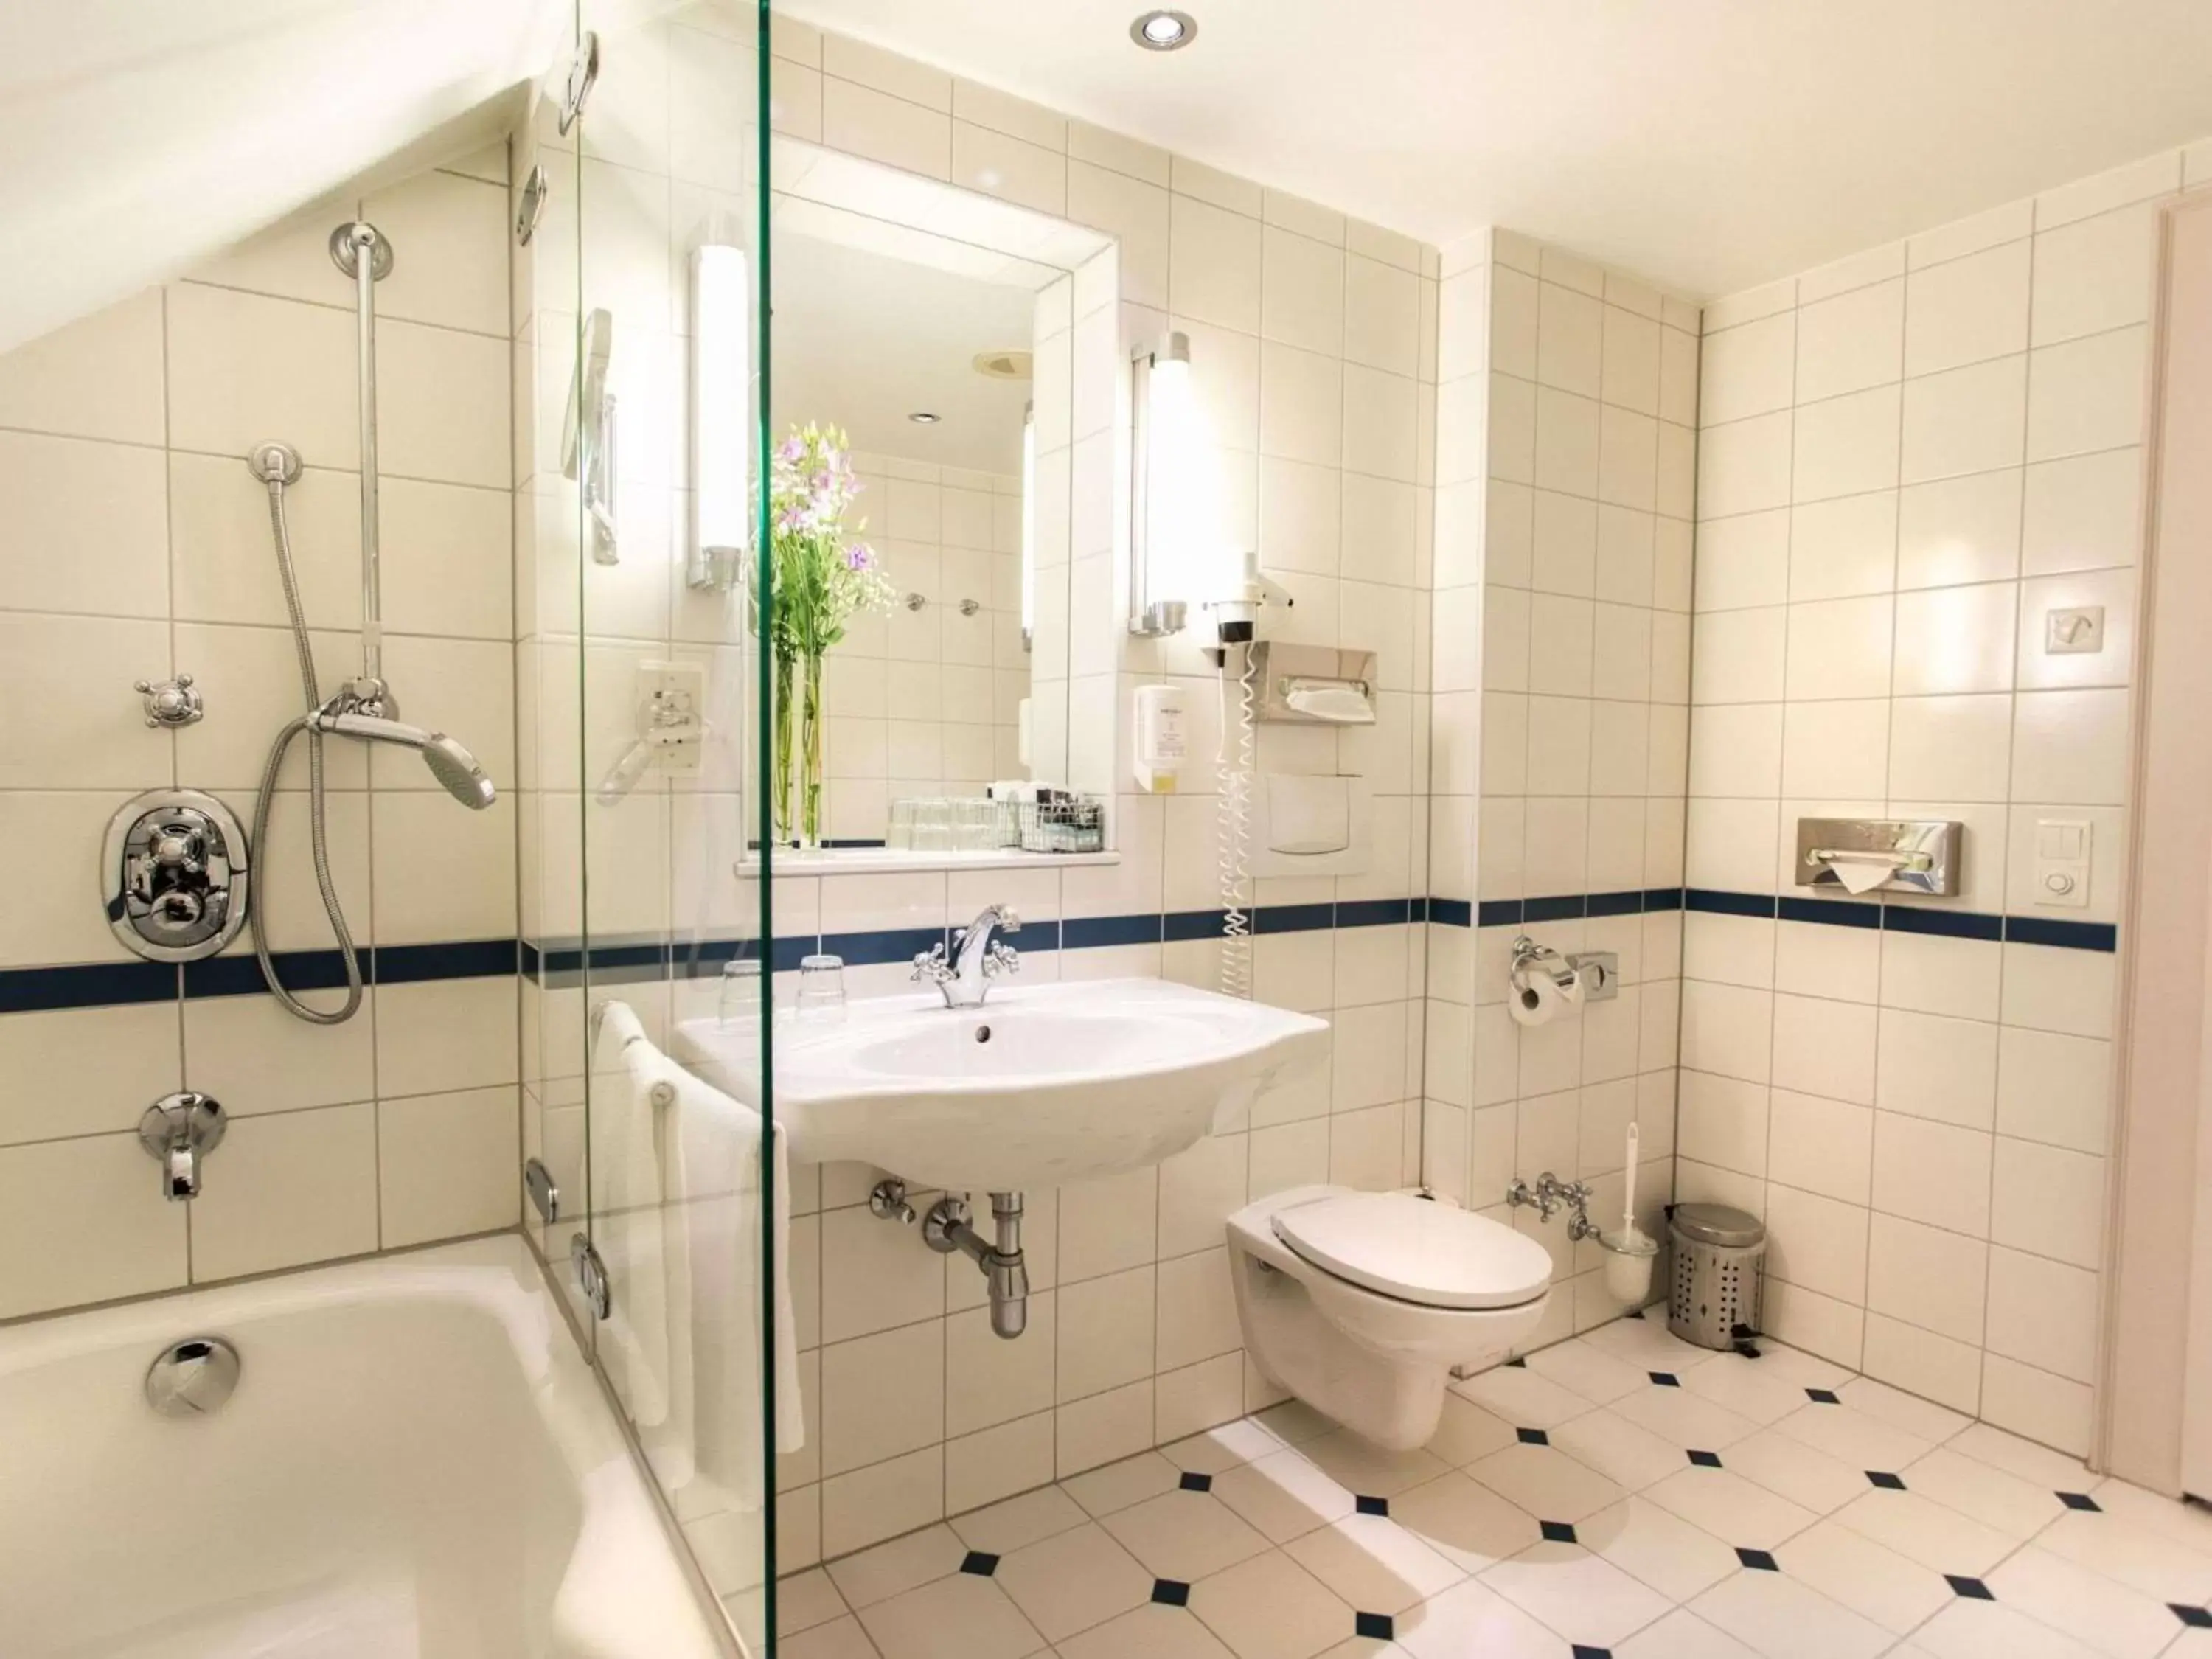 Photo of the whole room, Bathroom in Mercure Grand Hotel Biedermeier Wien